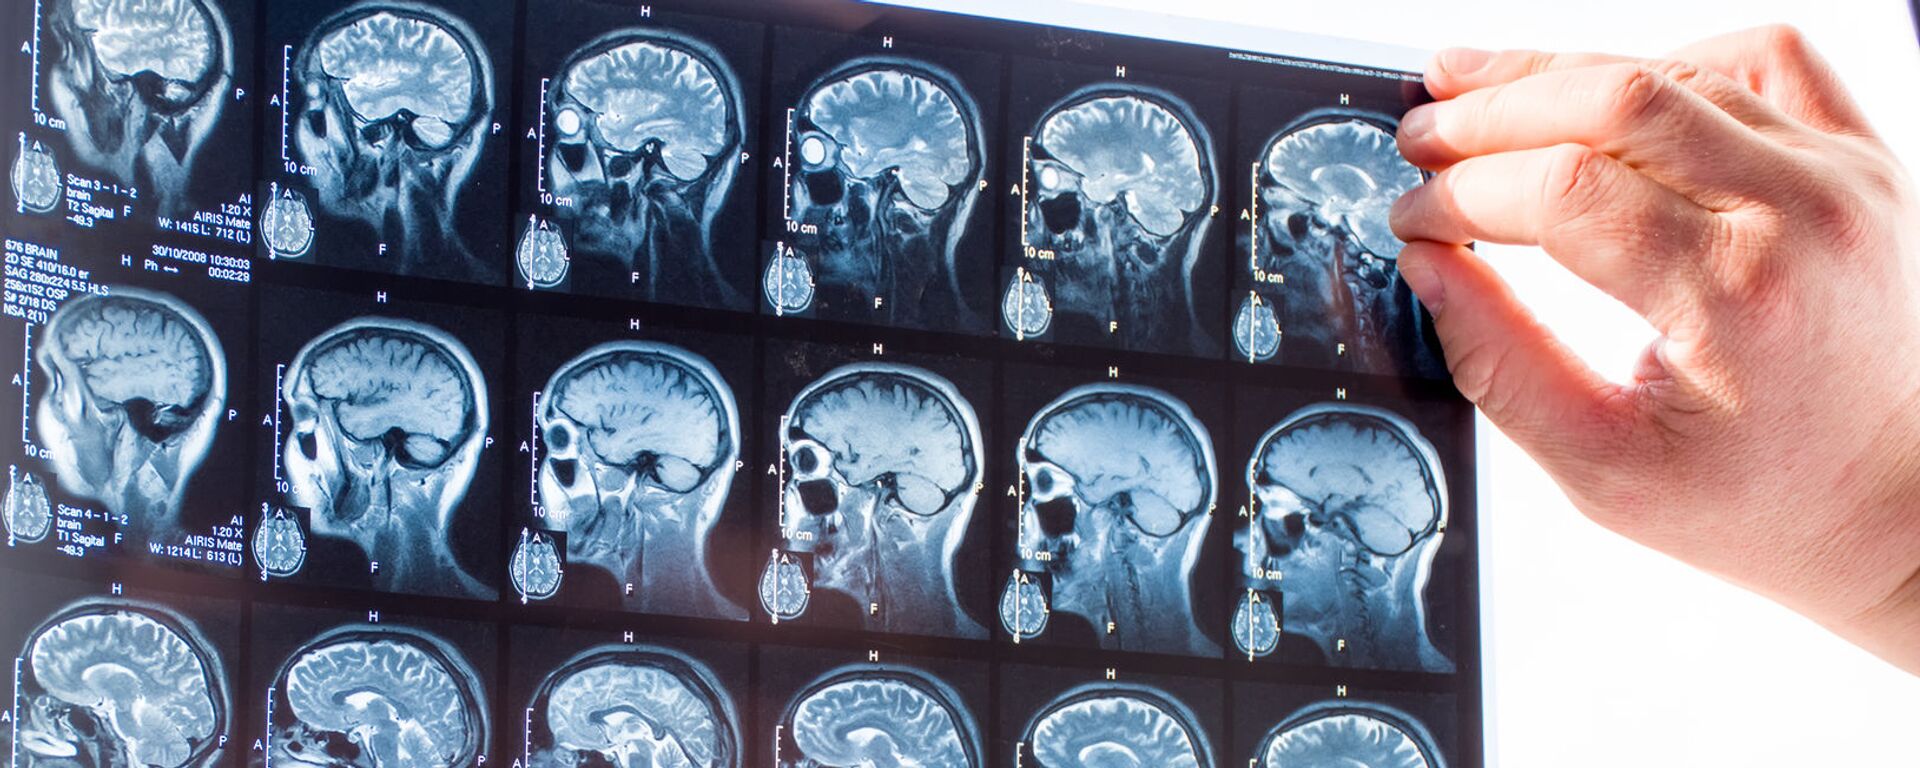 Врач изучает снимки головного мозга человека, архивное фото - Sputnik Lietuva, 1920, 10.10.2021